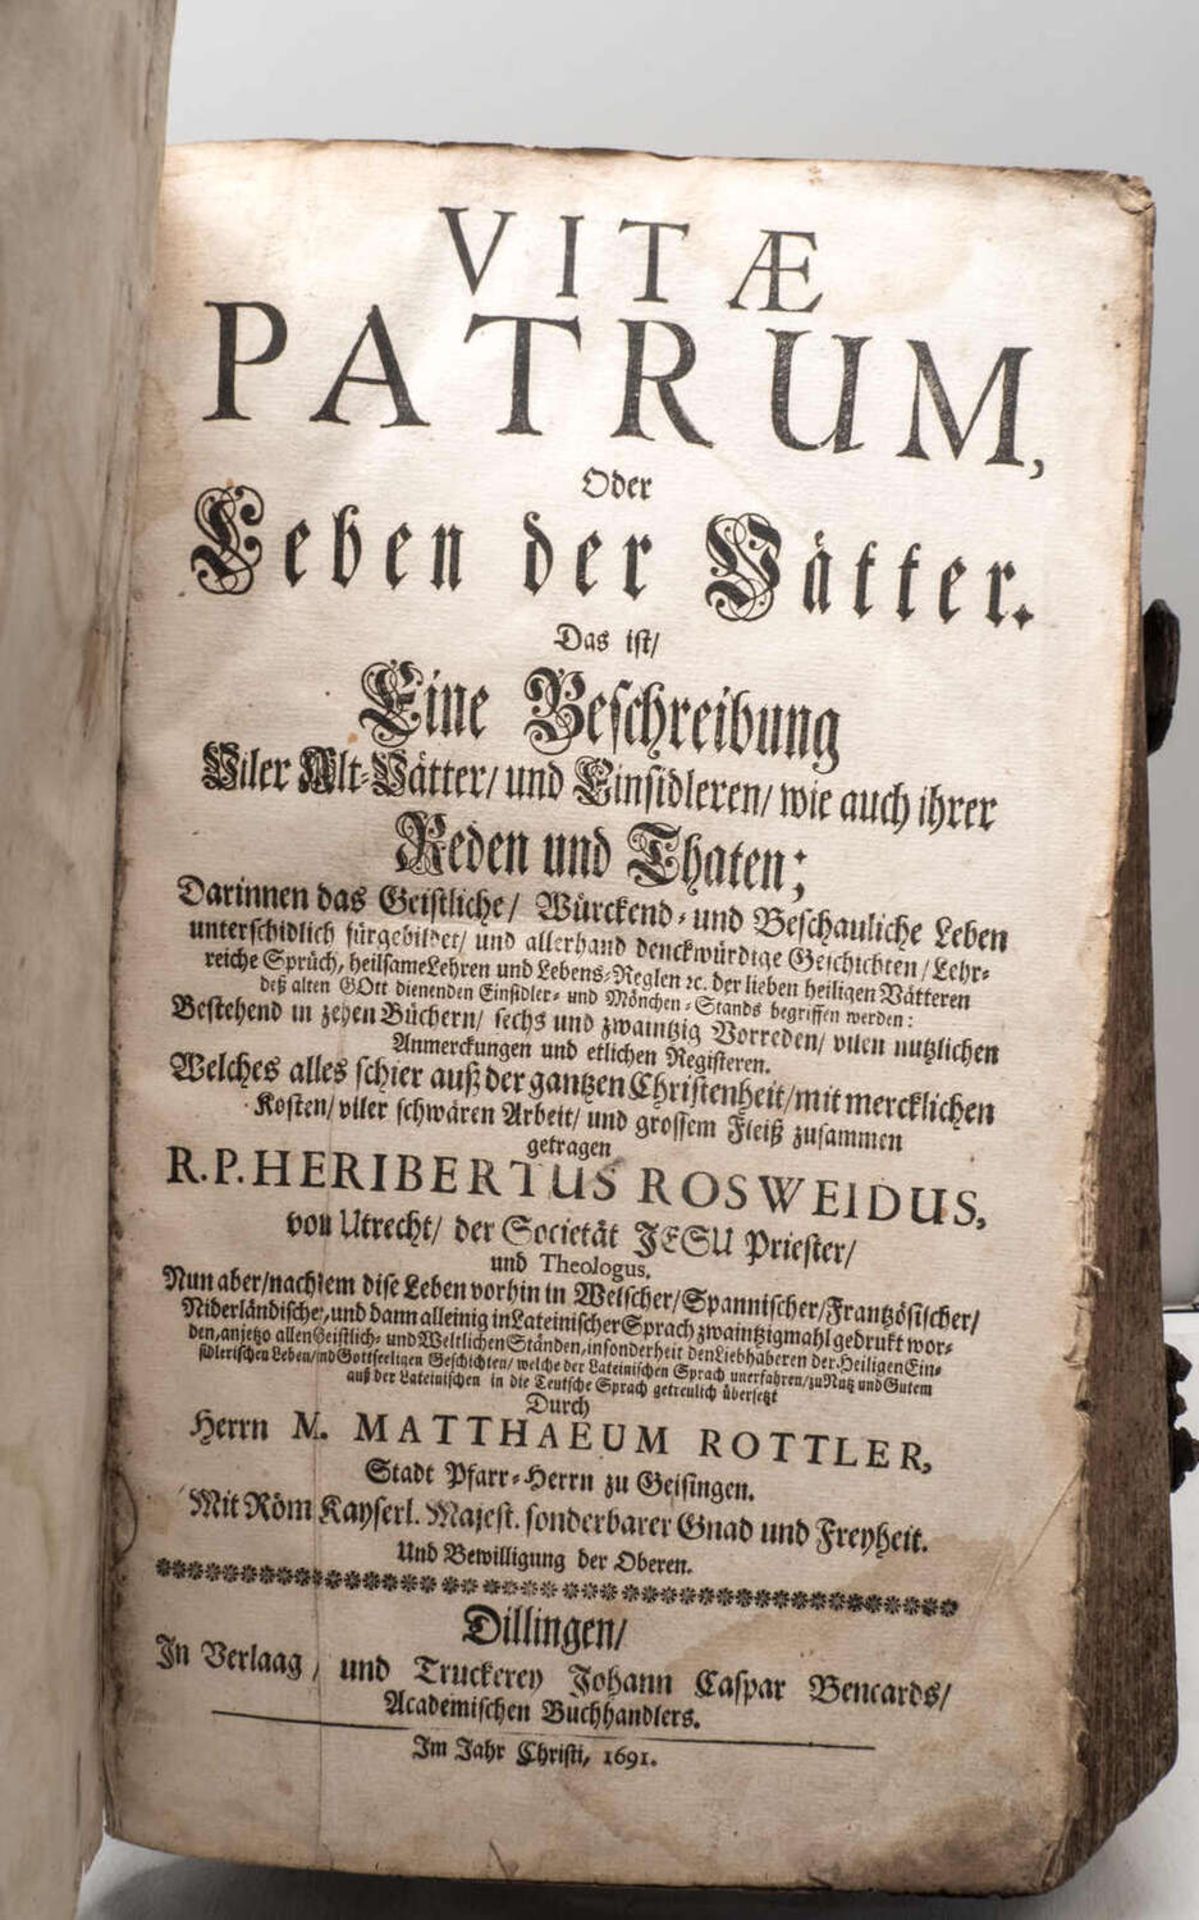 Roseweidus, Herbertius, "Vitae Patrum, oder Leben der Vaetter". Das ist / Eine Beschreibung Viler A - Image 2 of 3